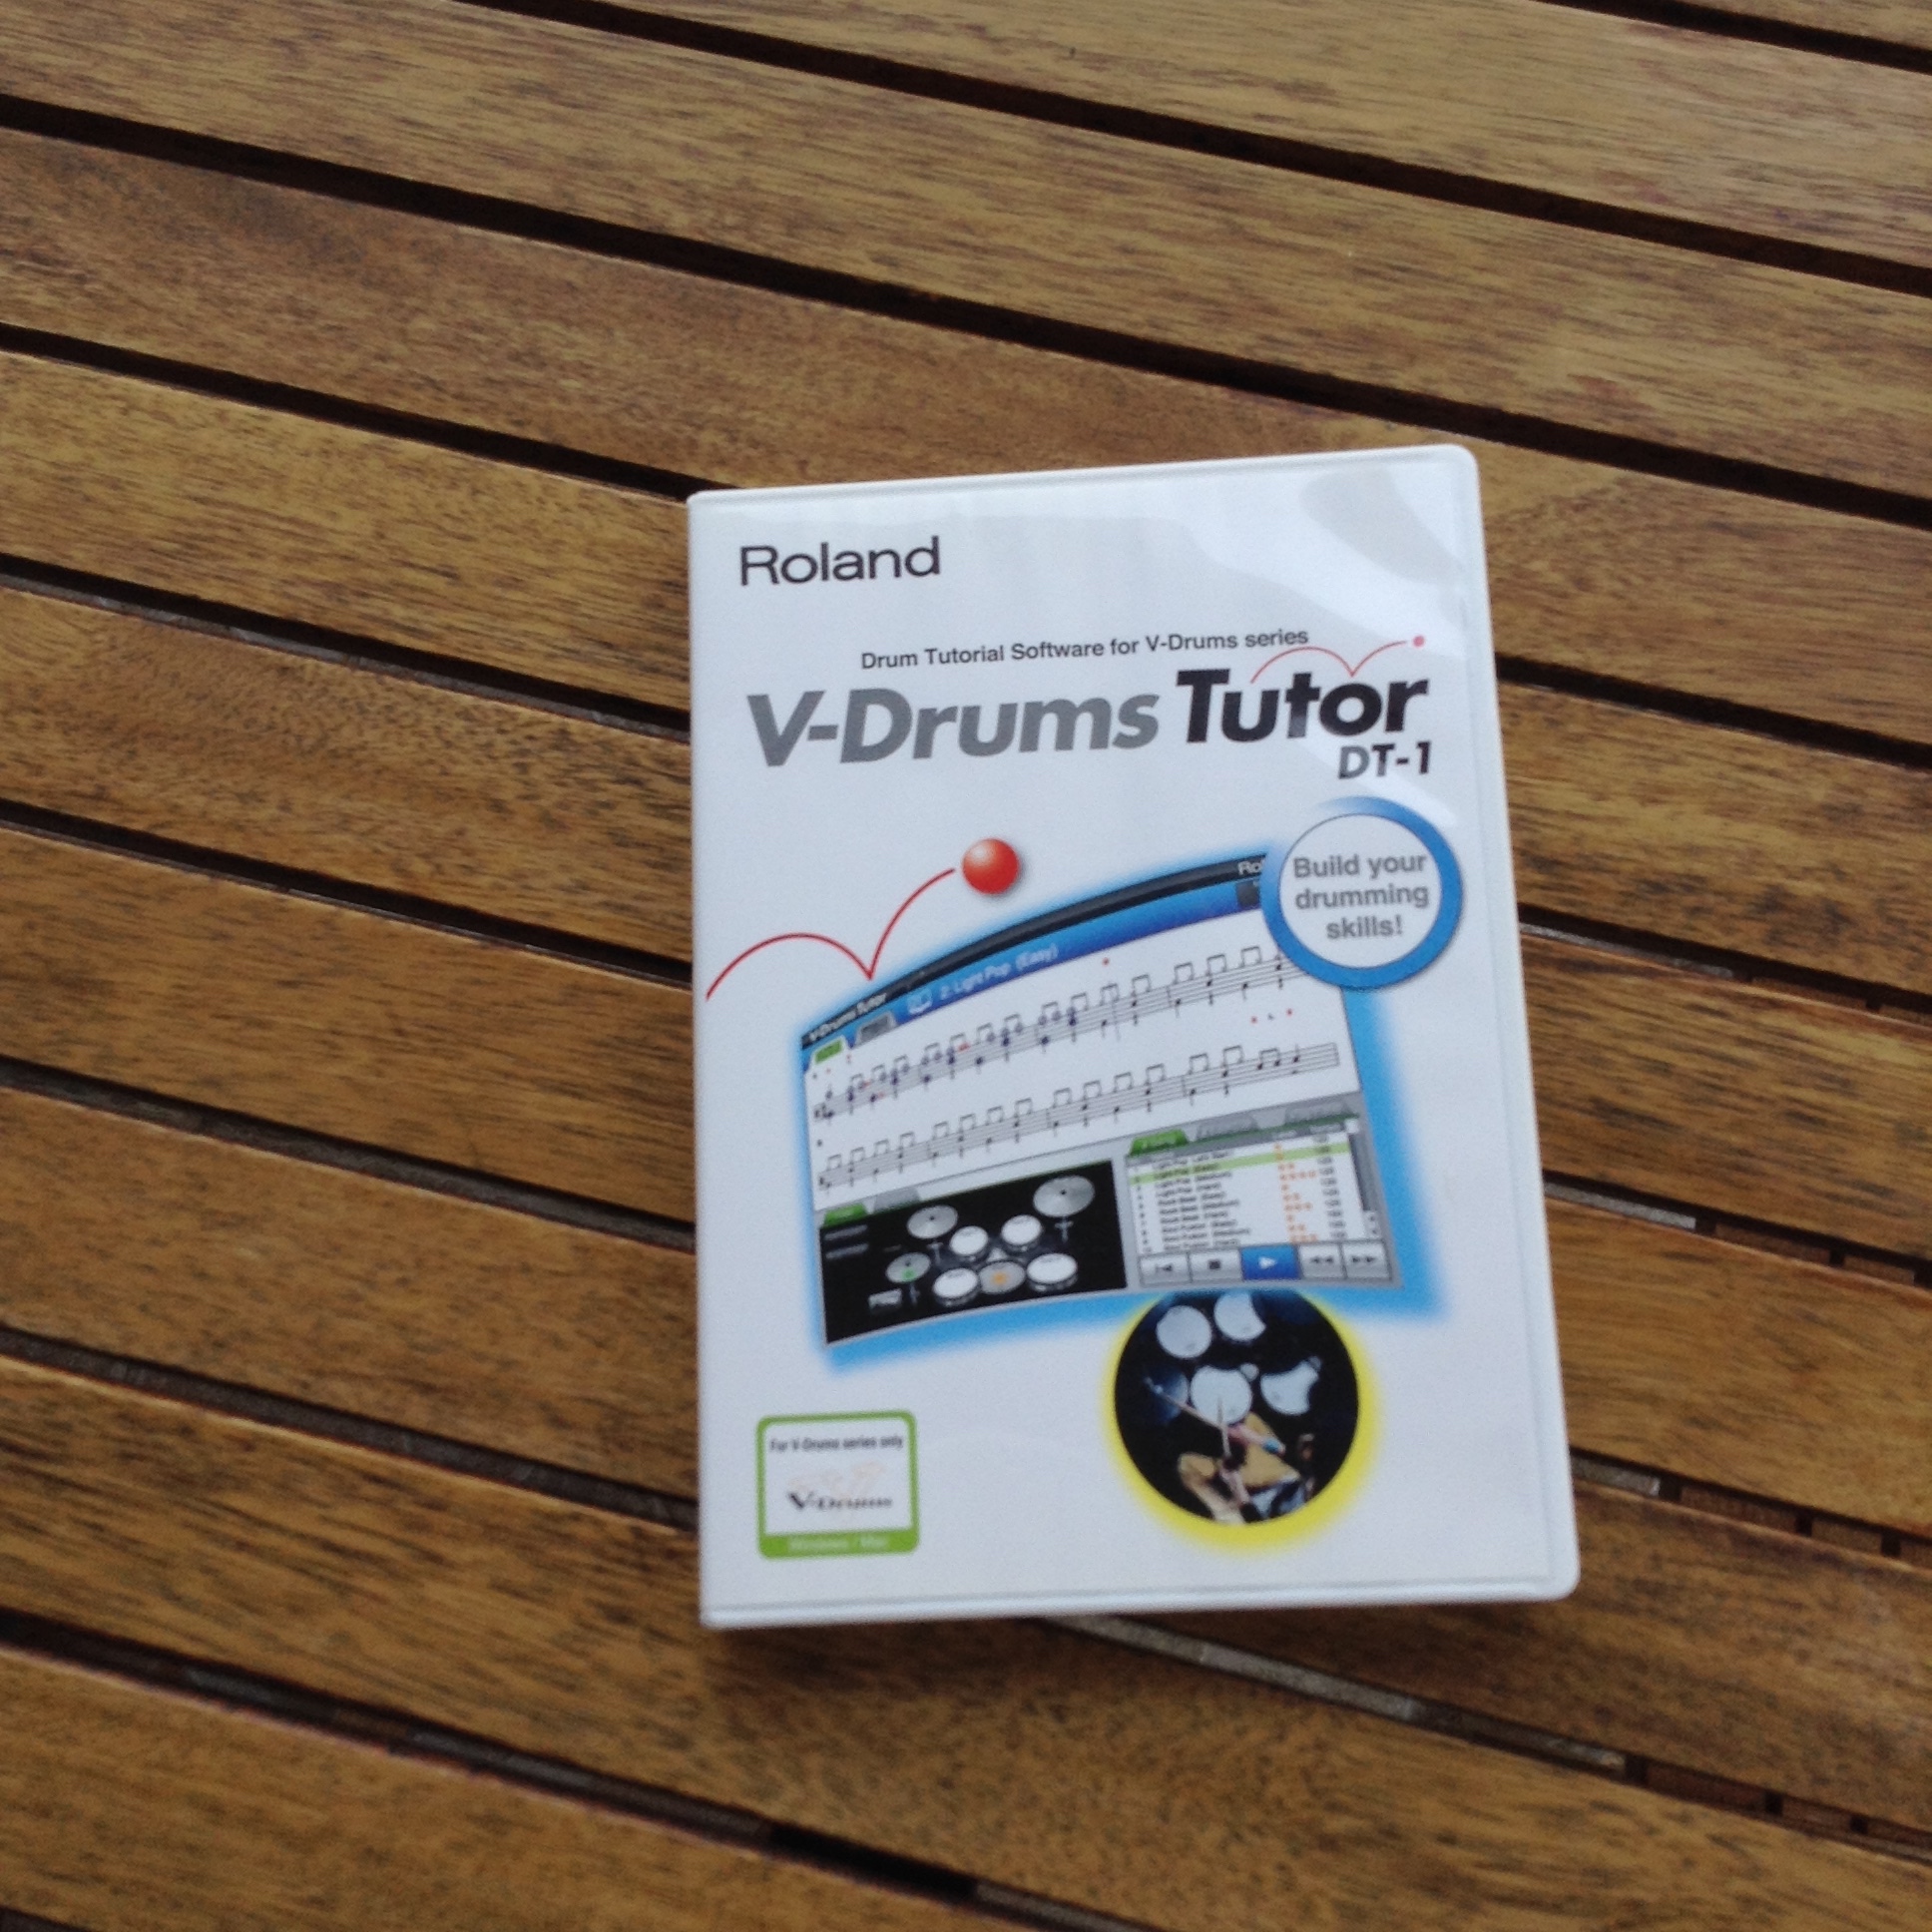 roland dt-1 v-drums tutor windows 10 will not woork